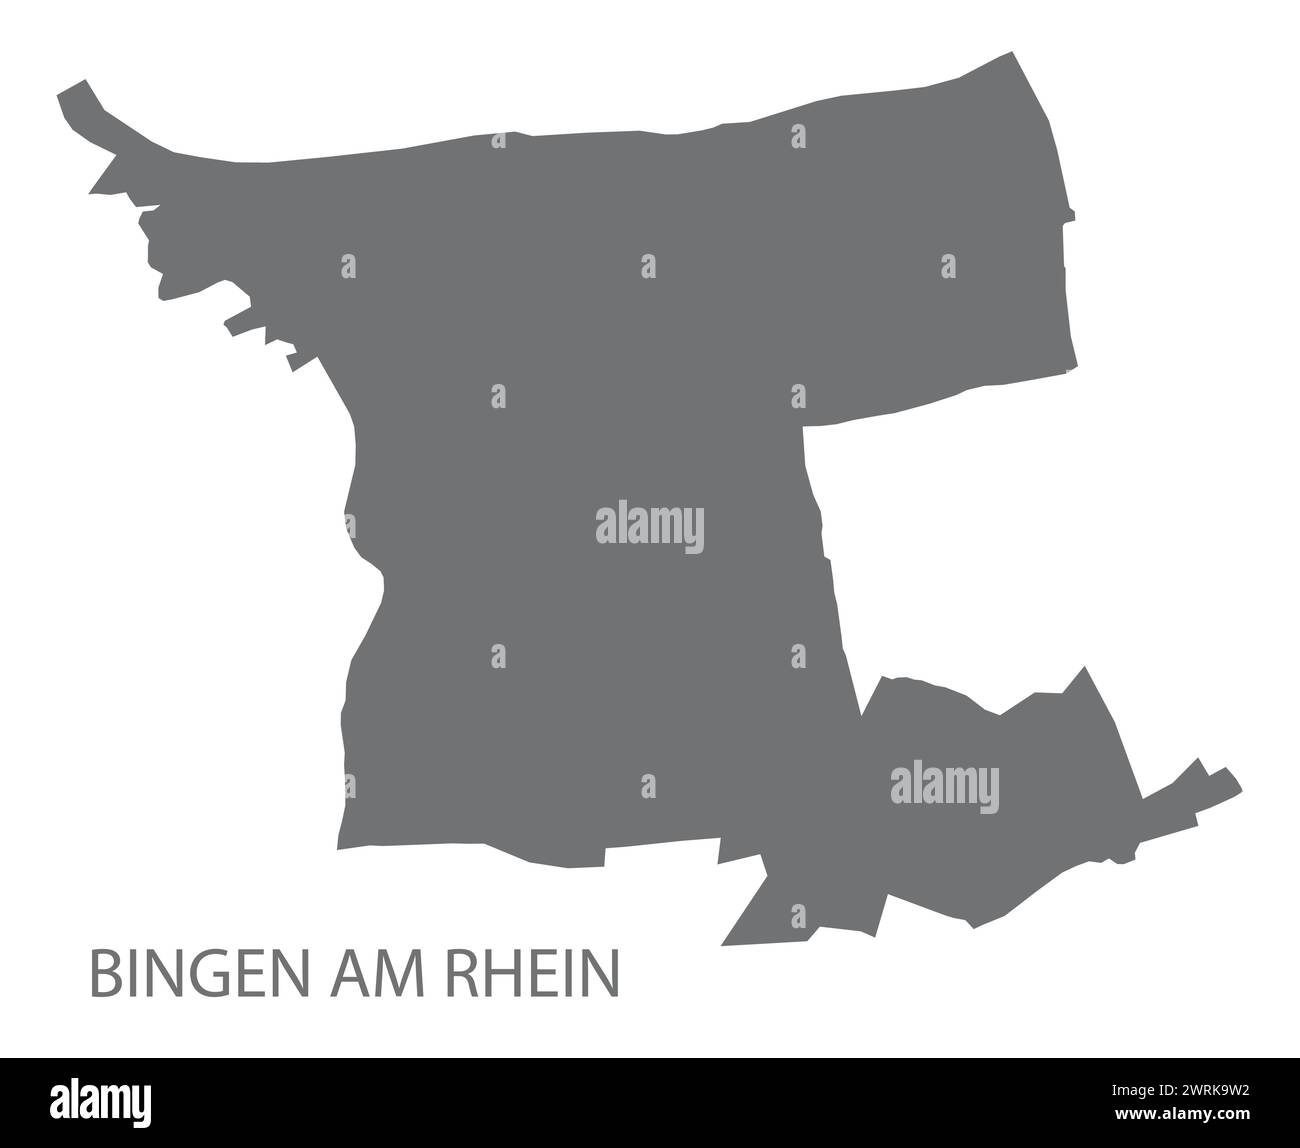 Bingen am Rhein Deutsche Stadtkarte graue Illustration Silhouette Form Stock Vektor